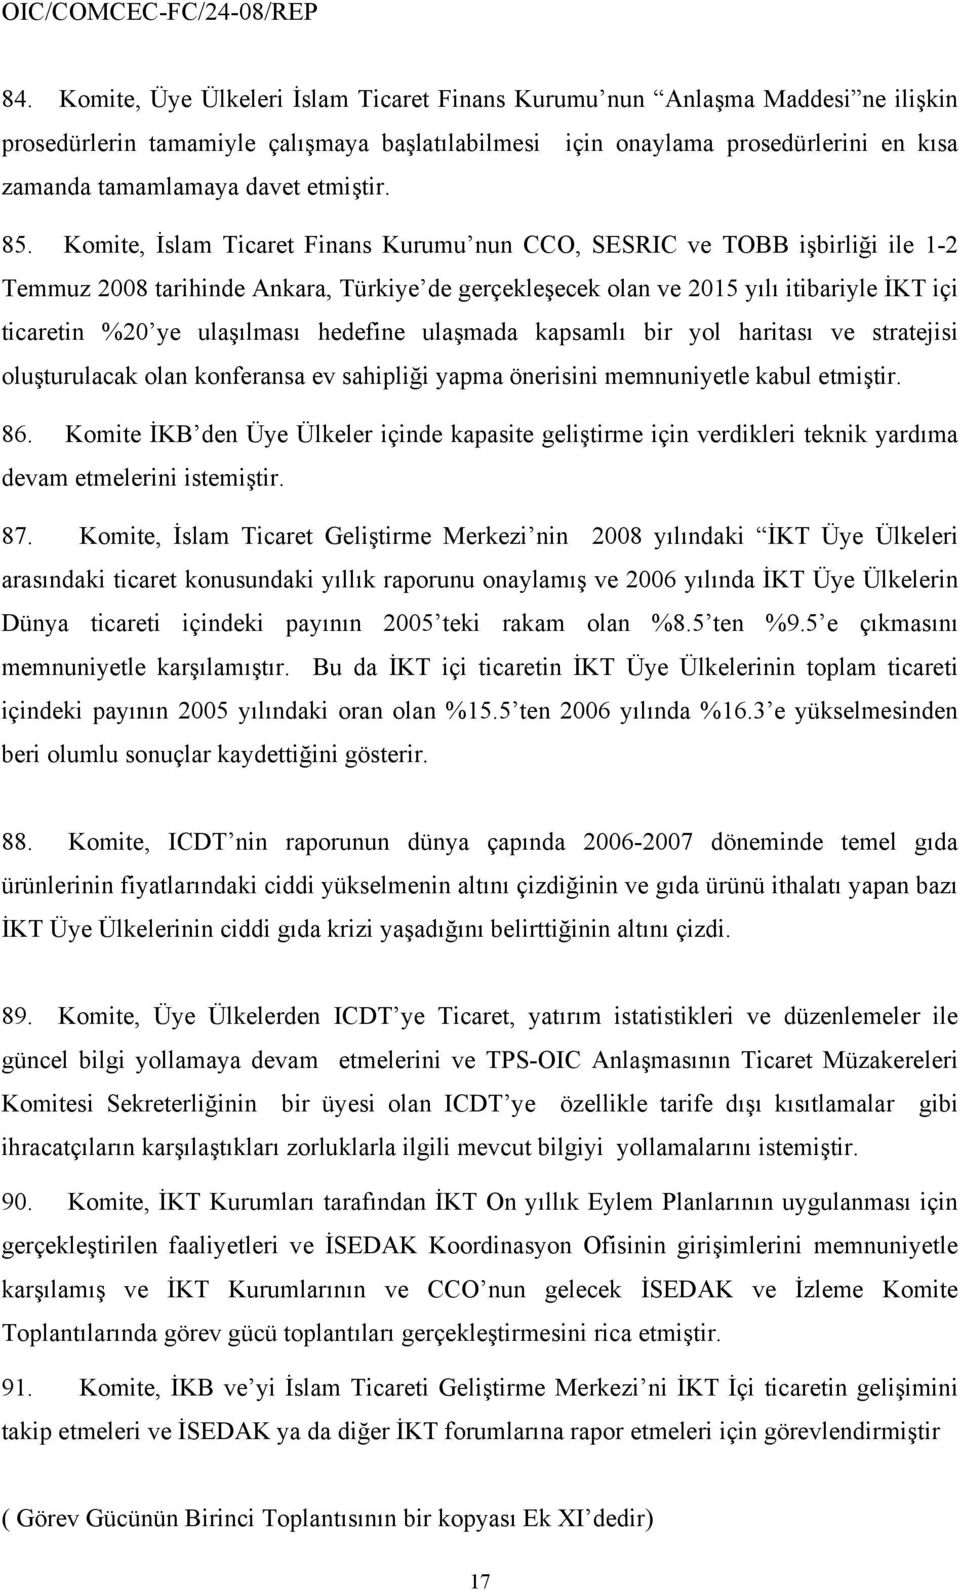 Komite, İslam Ticaret Finans Kurumu nun CCO, SESRIC ve TOBB işbirliği ile 1-2 Temmuz 2008 tarihinde Ankara, Türkiye de gerçekleşecek olan ve 2015 yılı itibariyle İKT içi ticaretin %20 ye ulaşılması